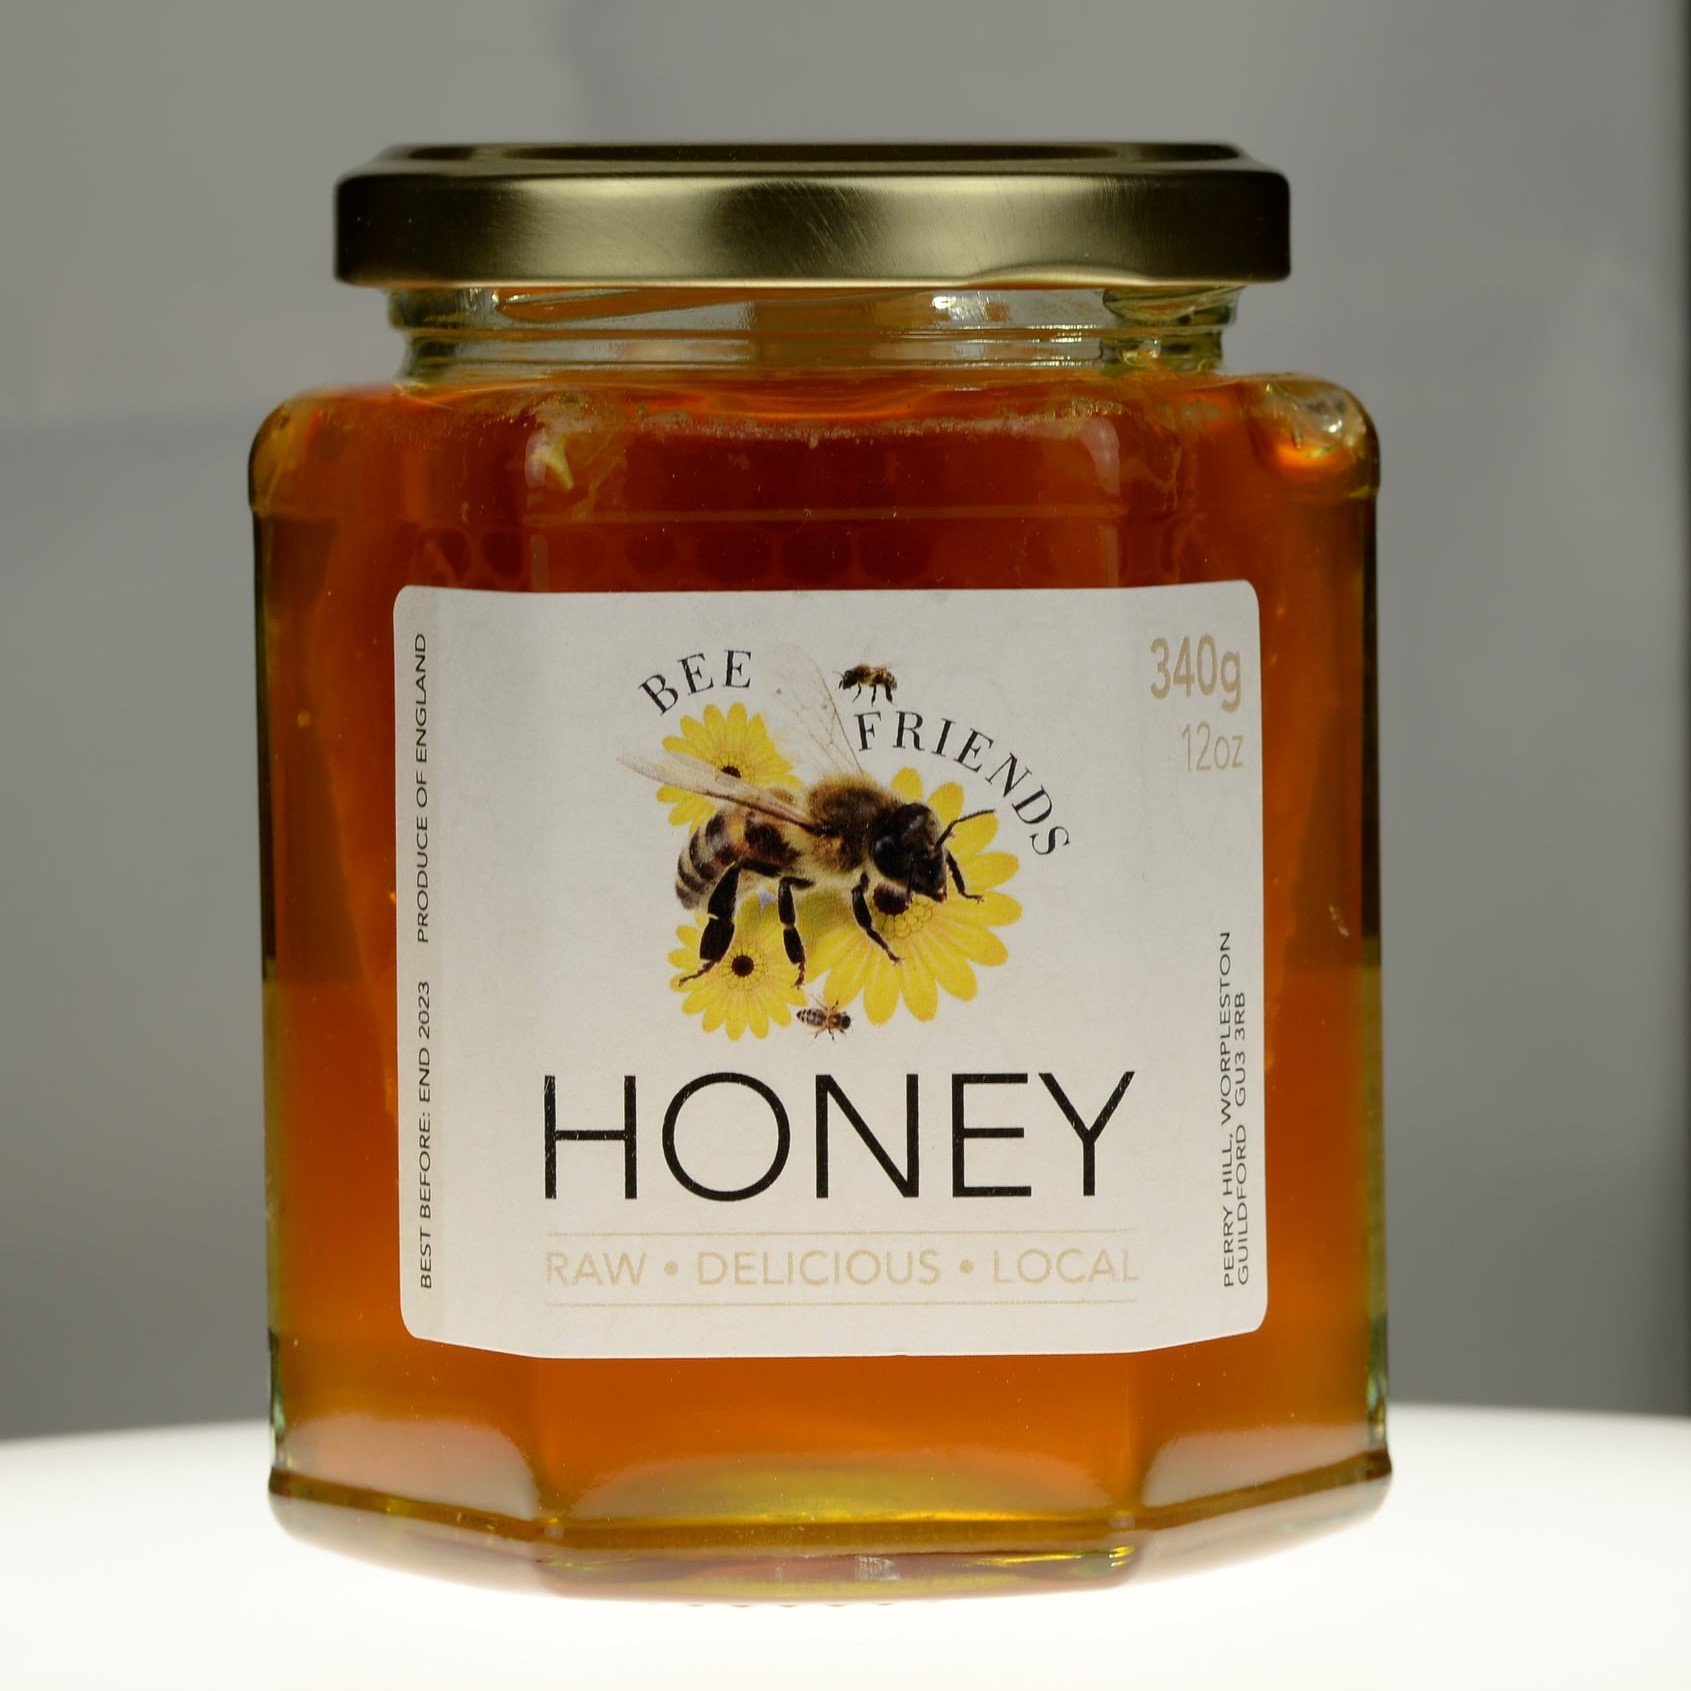 Bee Friends honey, Surrey